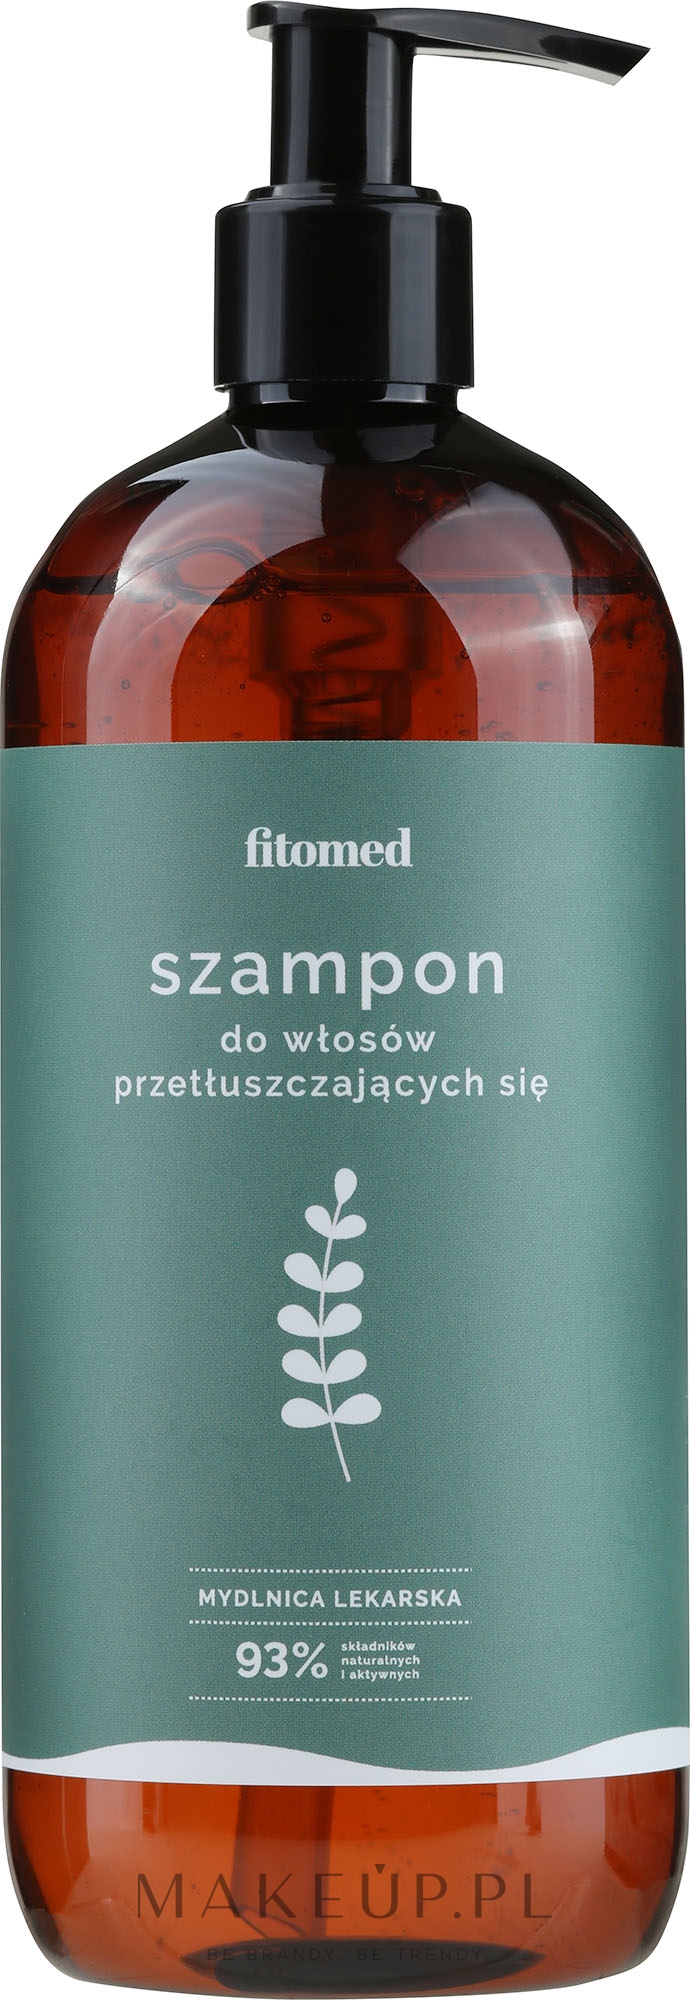 szampon ziołowy z mydlnicy lekarskiej